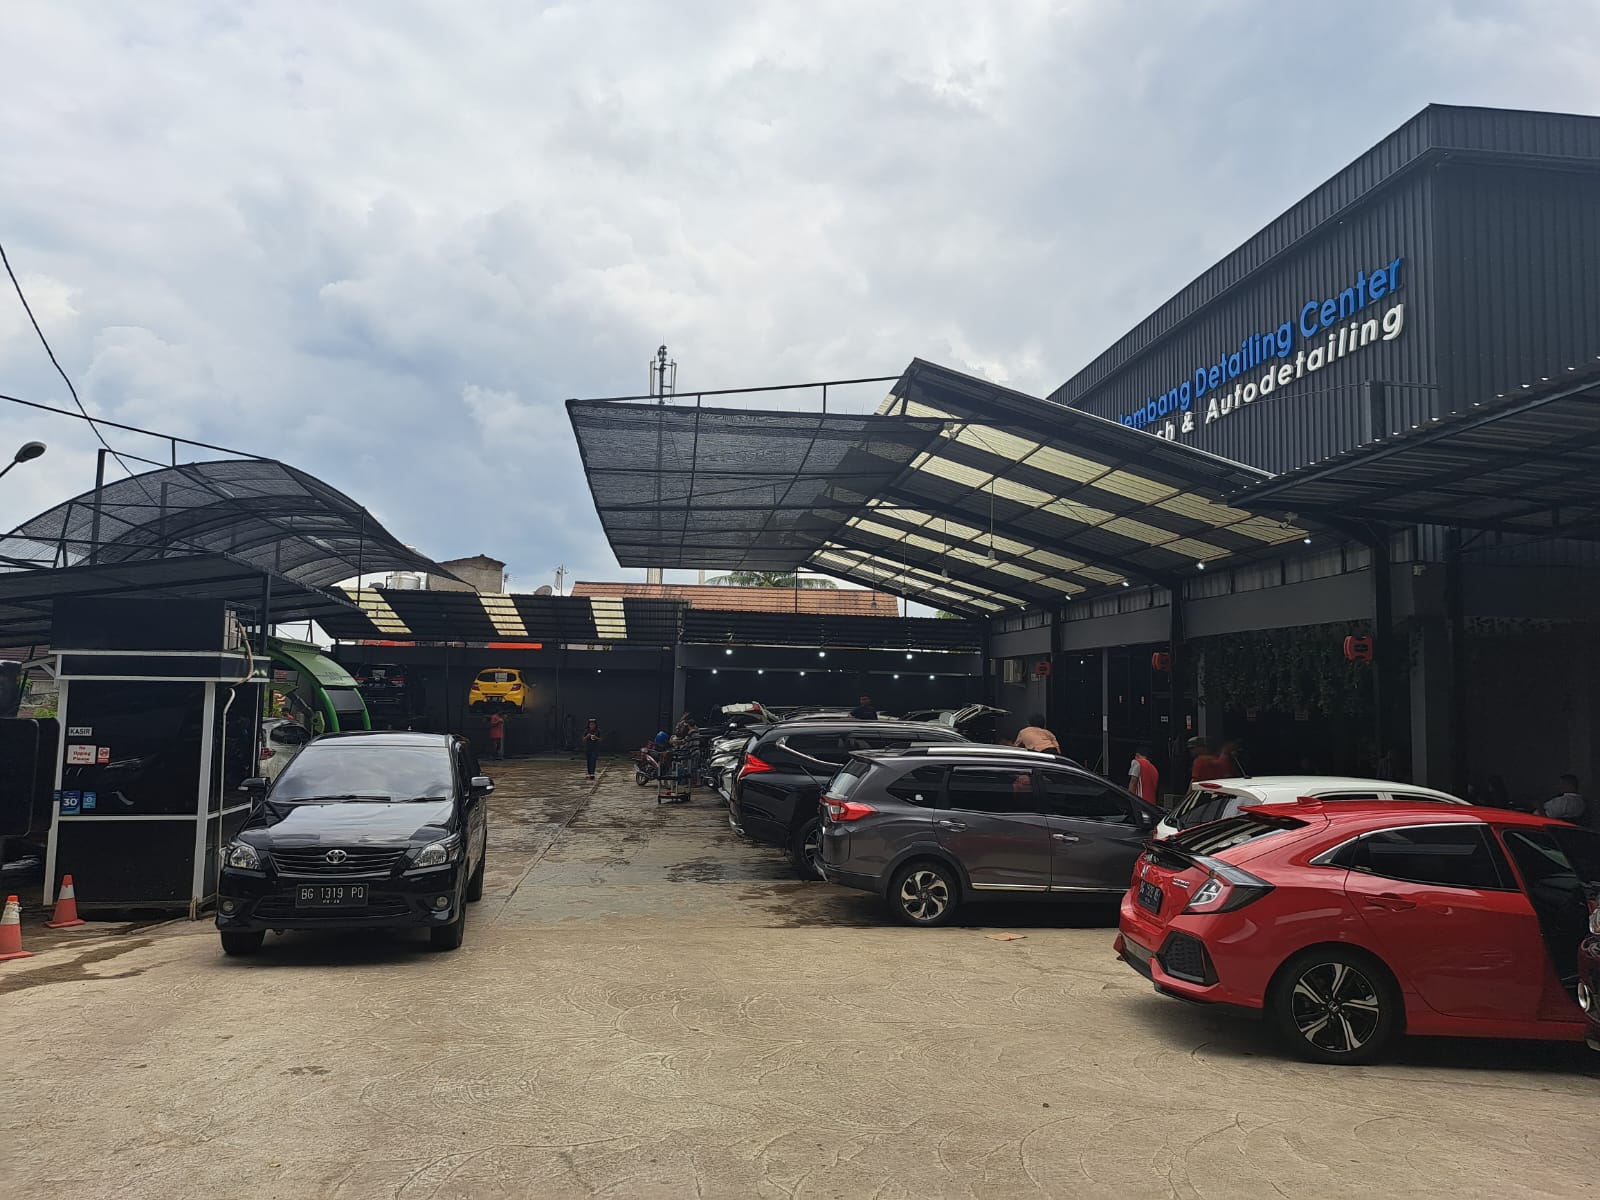 Sedang Jadi Tren, Ini 4 Tempat Cucian Mobil Tanpa Sentuh Rekomendasi di Kota Palembang